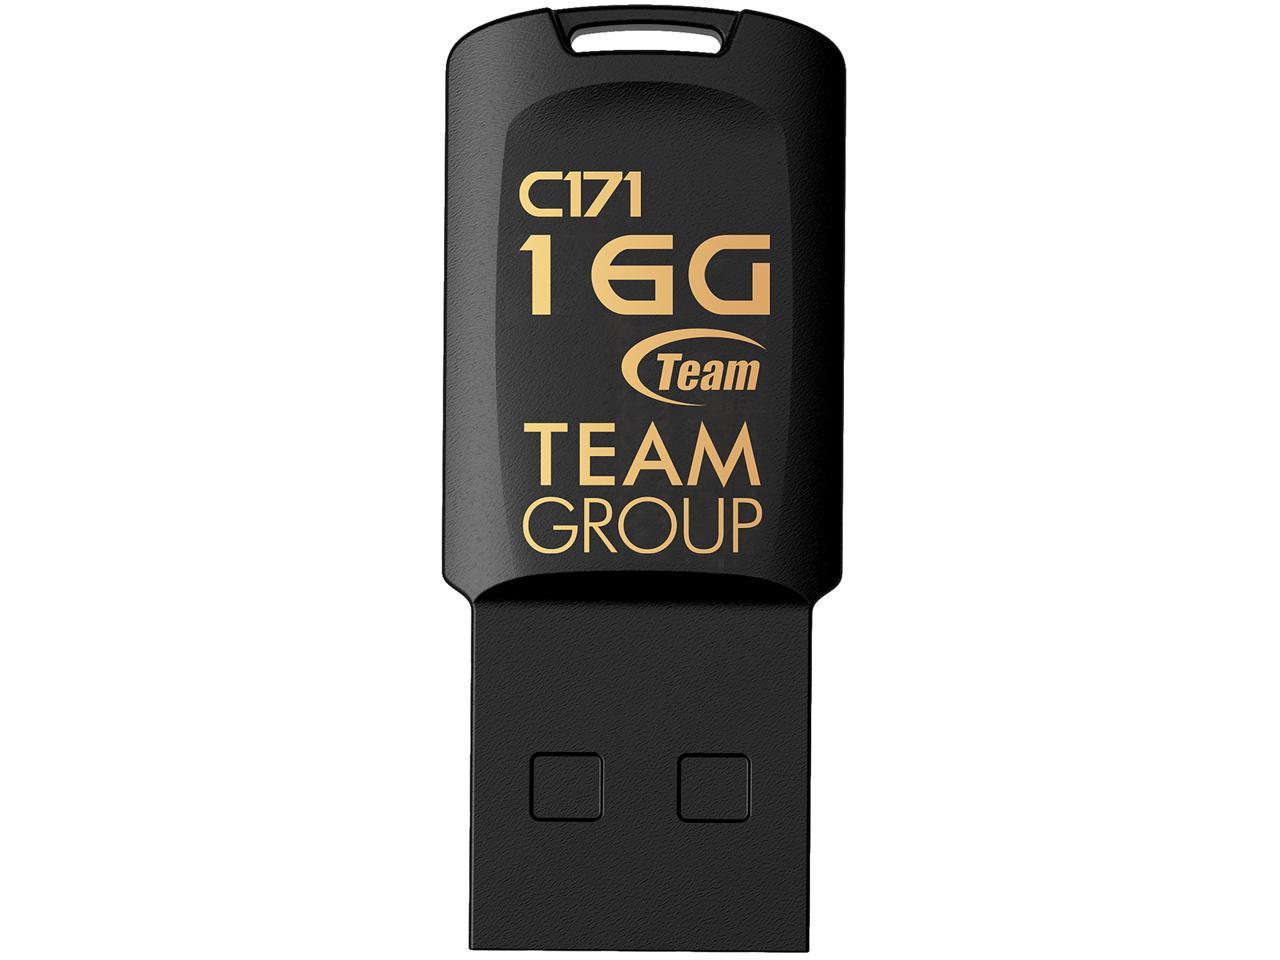 Team C171 Usb 2.0 Drive 32Gb Black Retail Model Tc17132Gb01